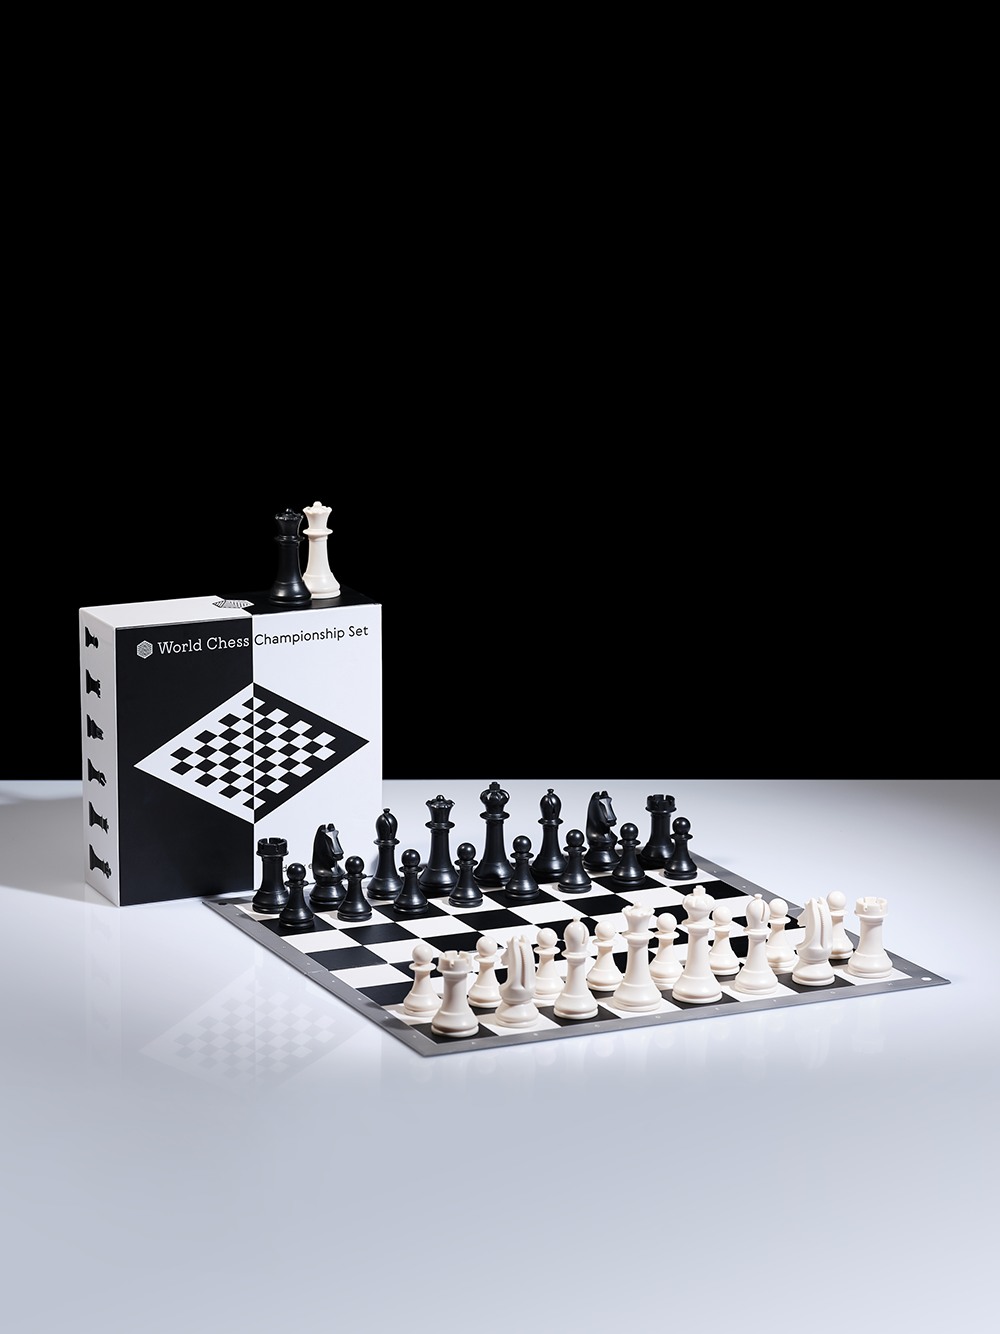 Professional Chess Association, chess organization